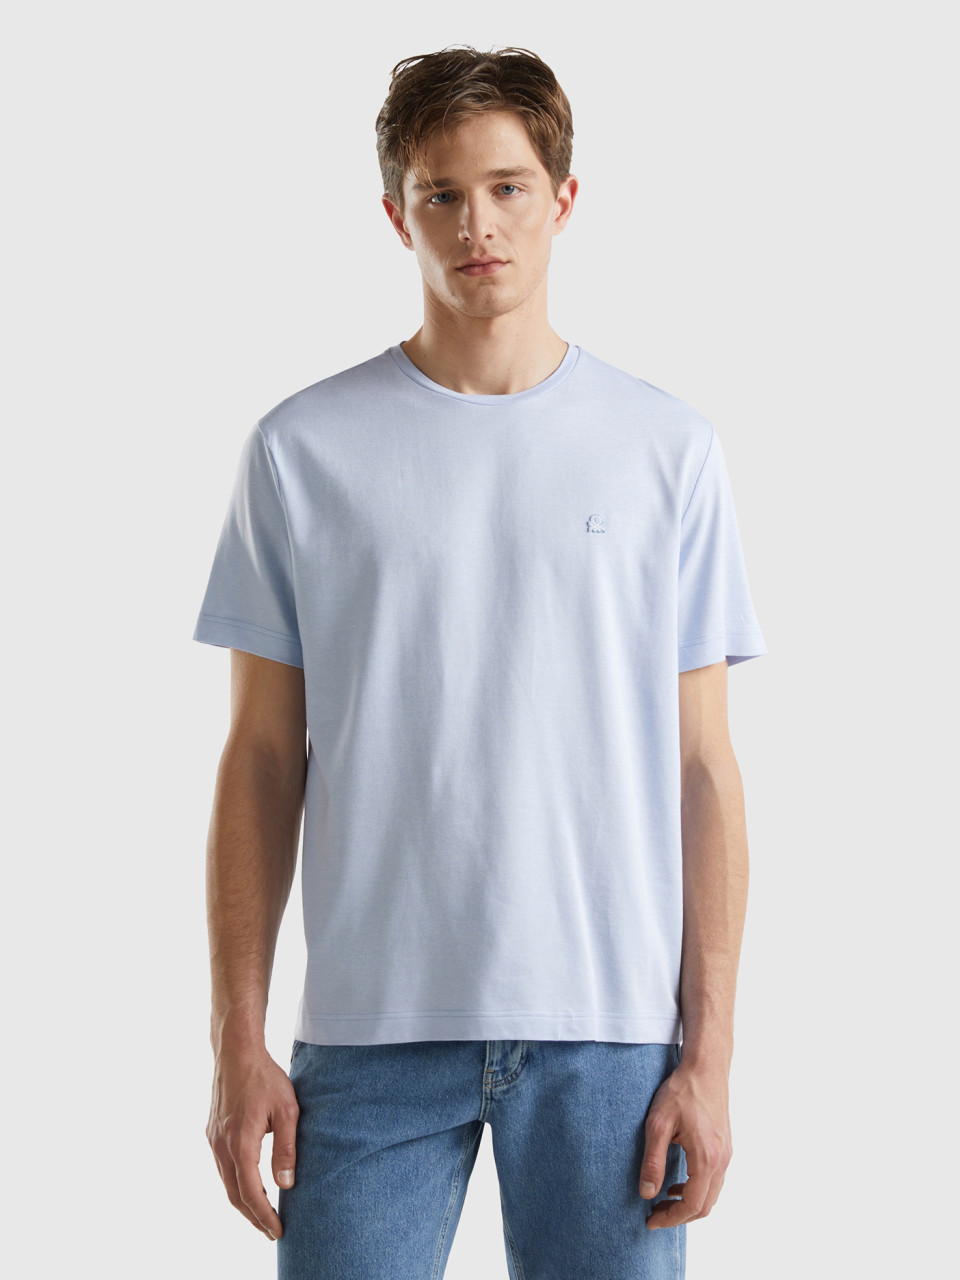 Benetton, Camiseta De Micropiqué, Celeste, Hombre